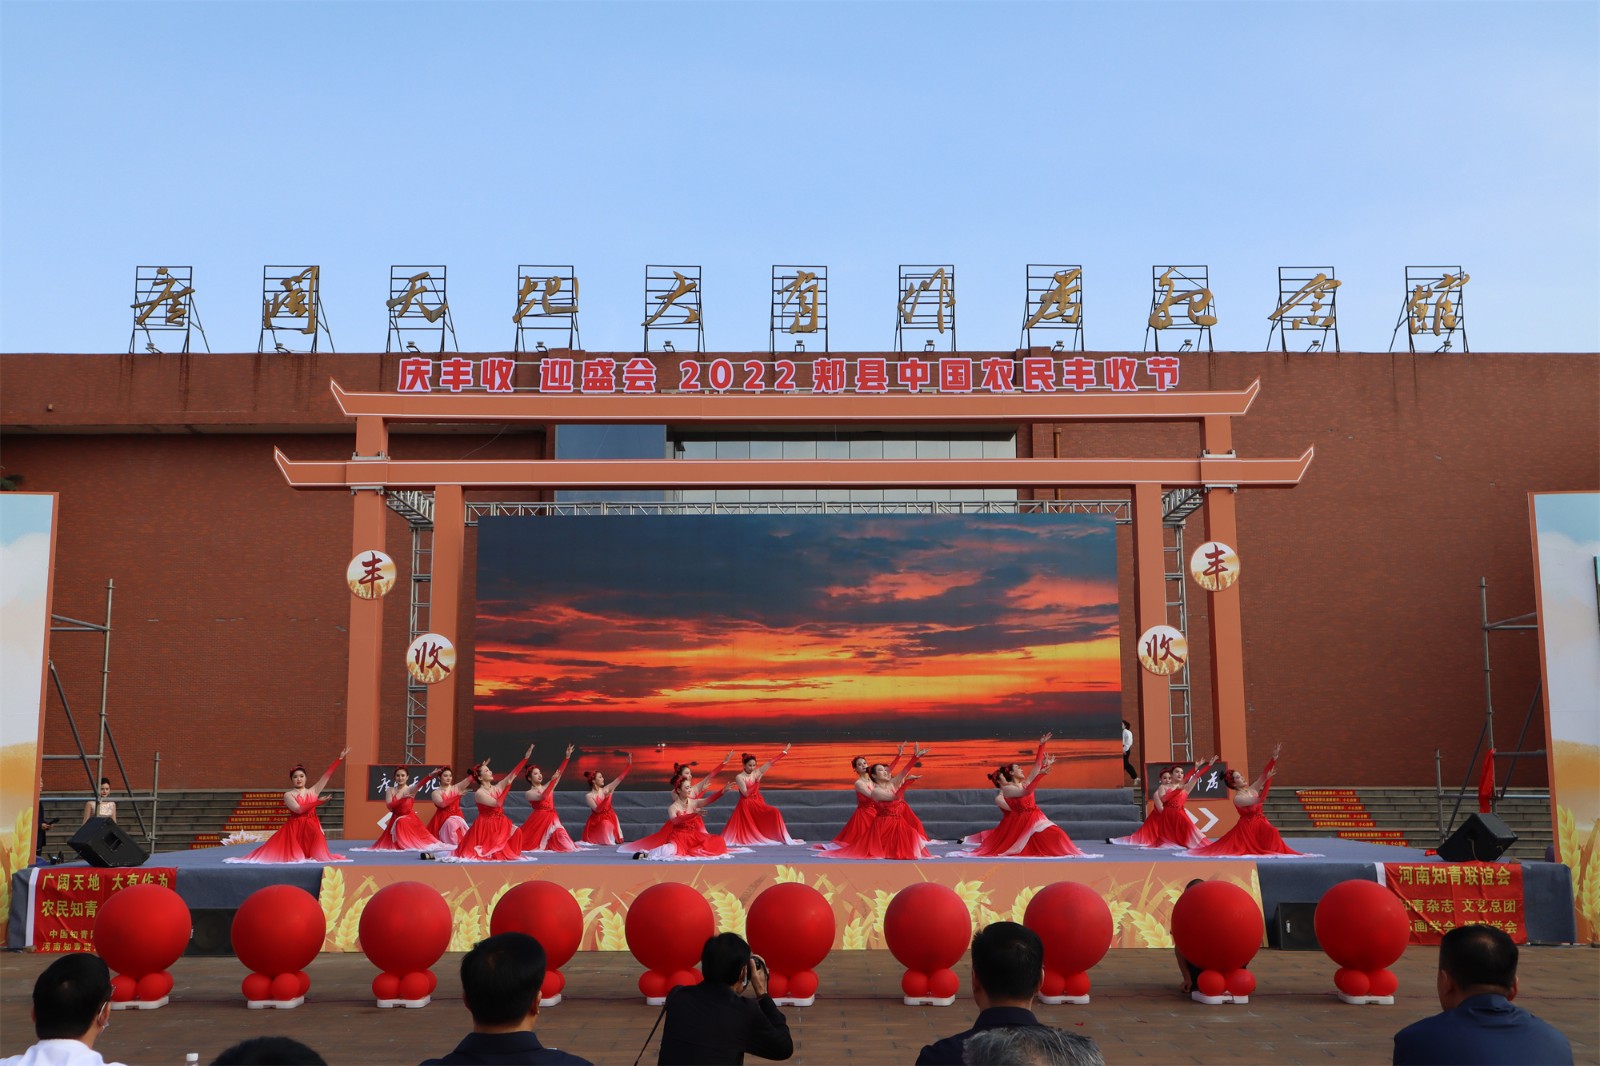 9月23日“庆丰收·迎盛会”2022郏县庆祝中国农民丰收节活动举行.5.jpg